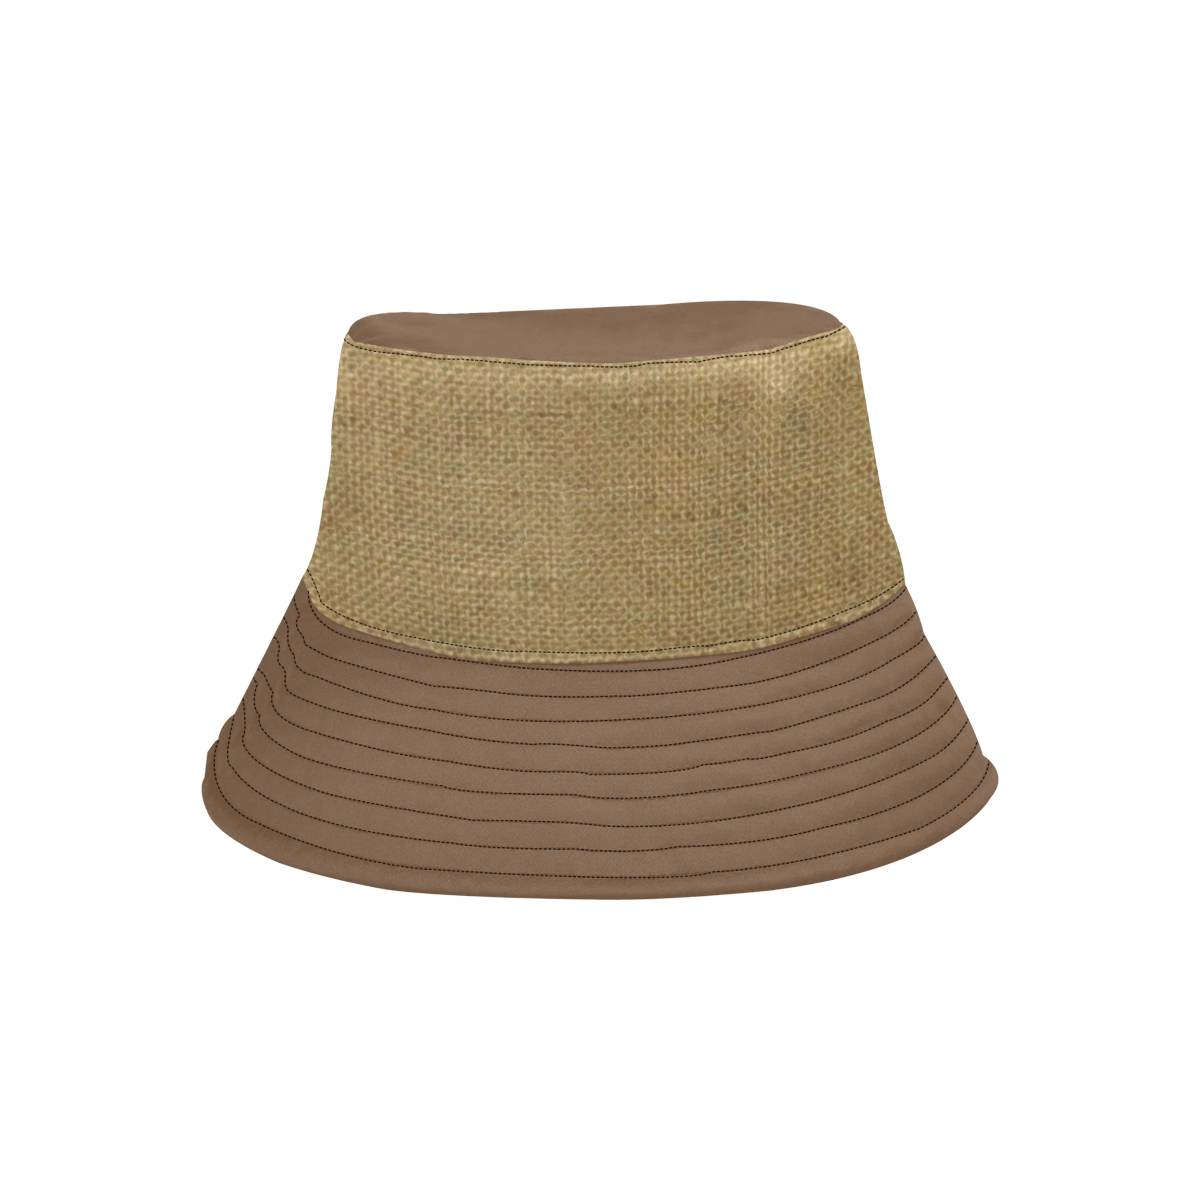 Burlap Coffee Sack Grunge Knit Look in dark coffee brown All Over Print Bucket Hat